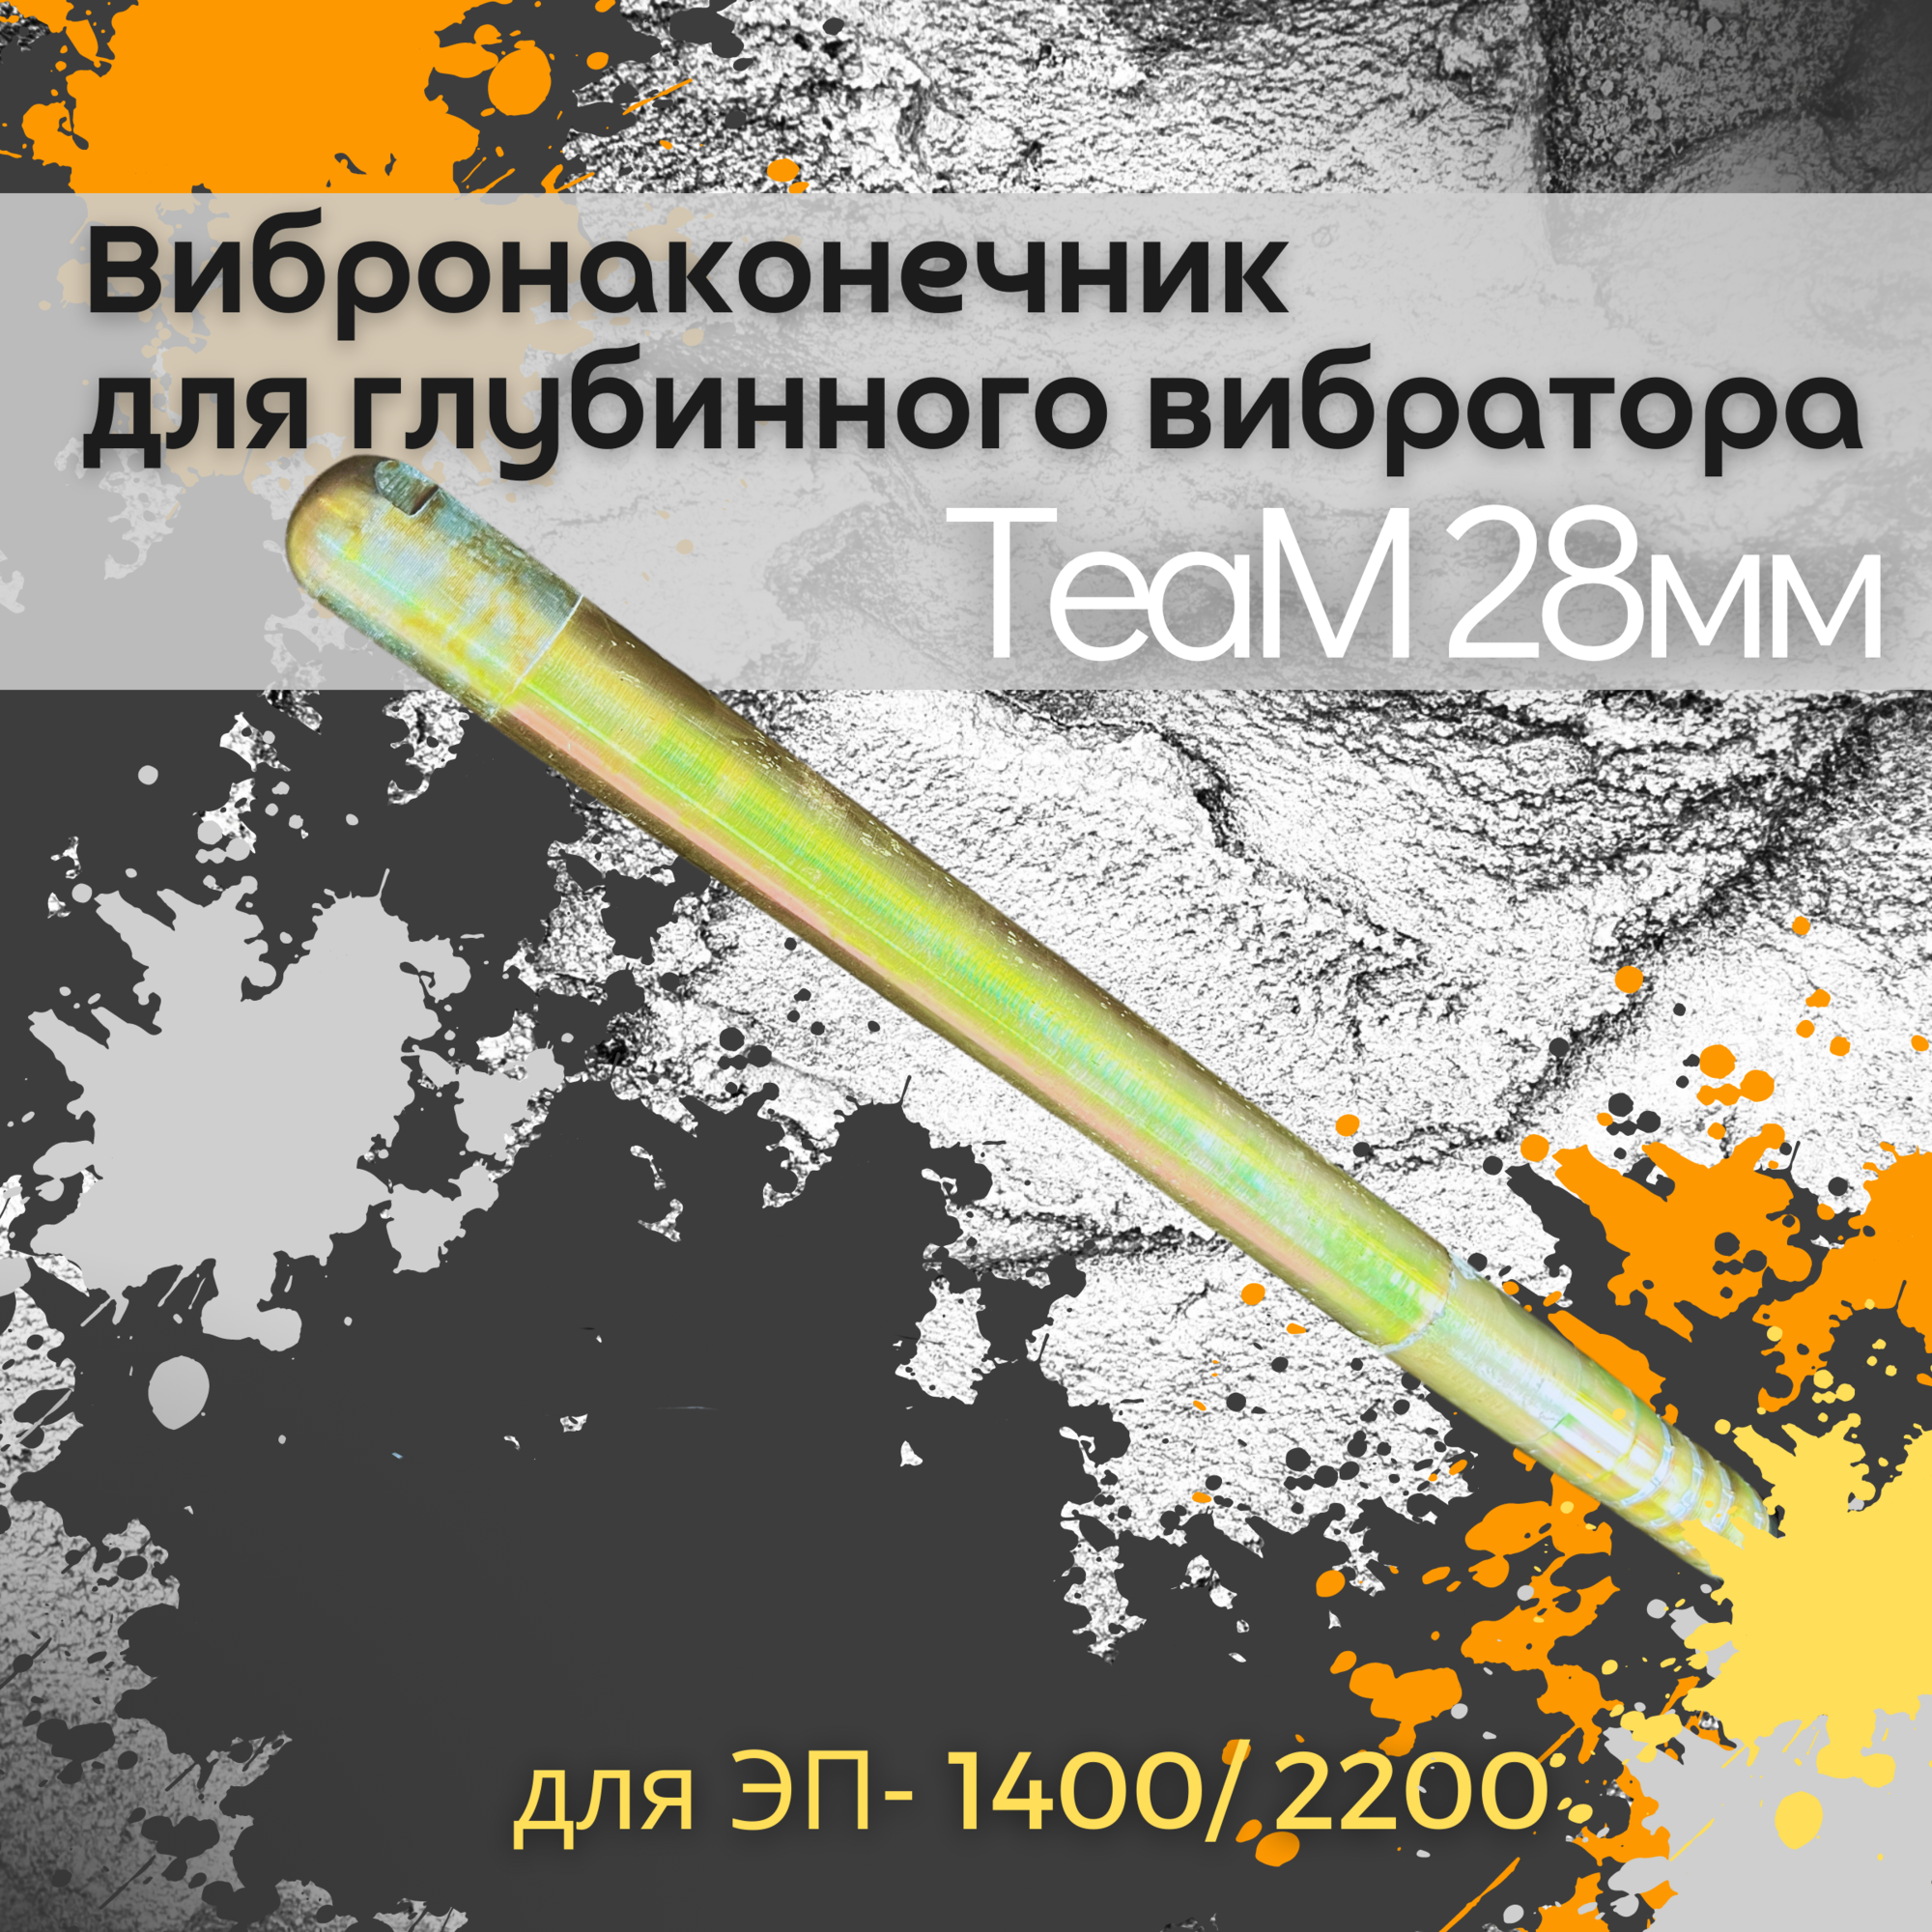 Вибронаконечник TeaM 28 мм для ЭП-1400/2200 1